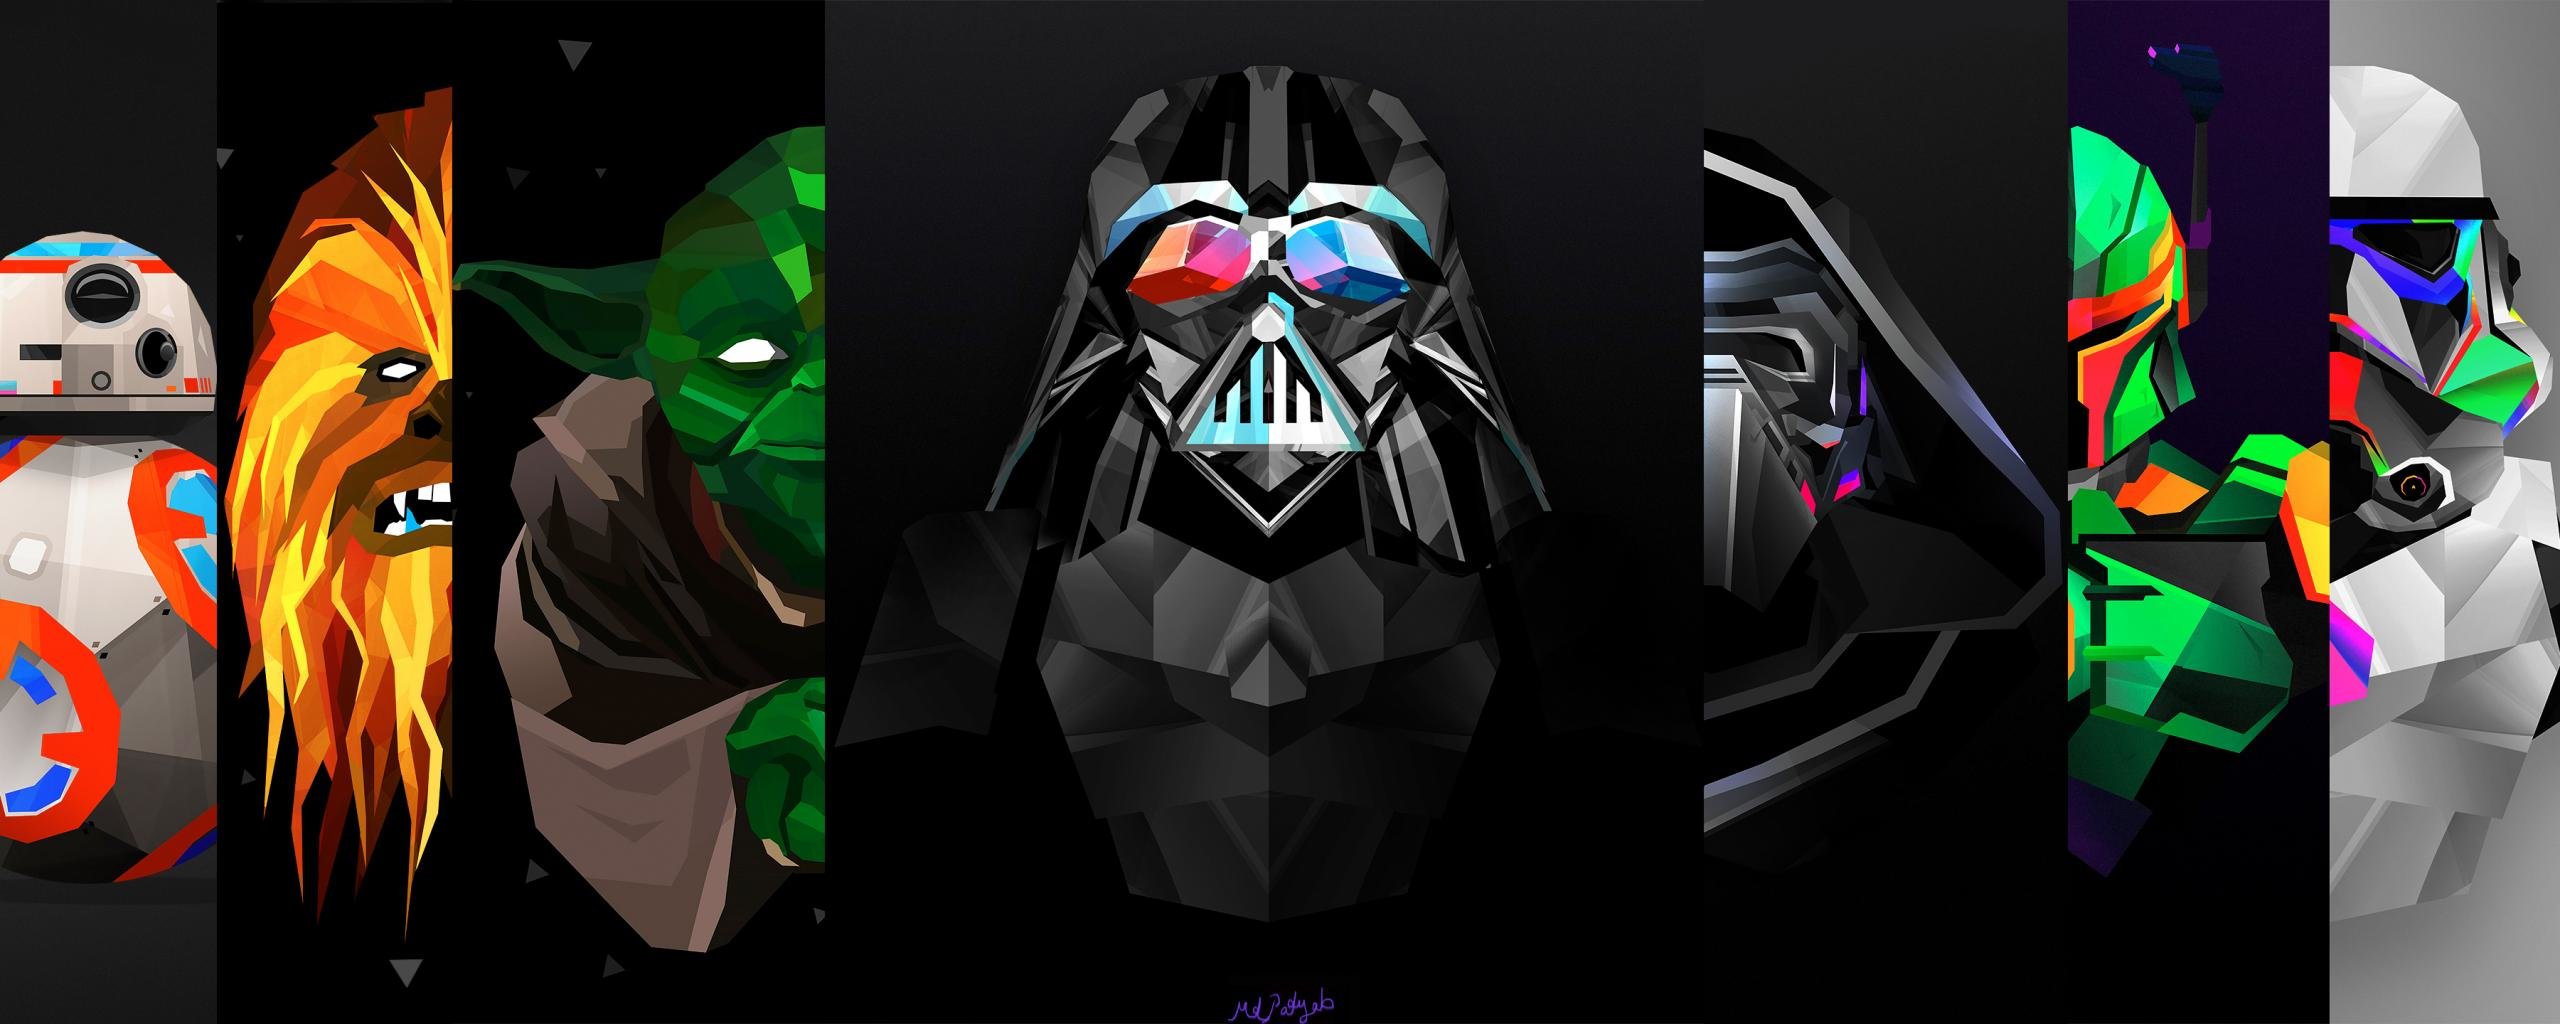 Darth Vader Dual Monitor Wallpaper